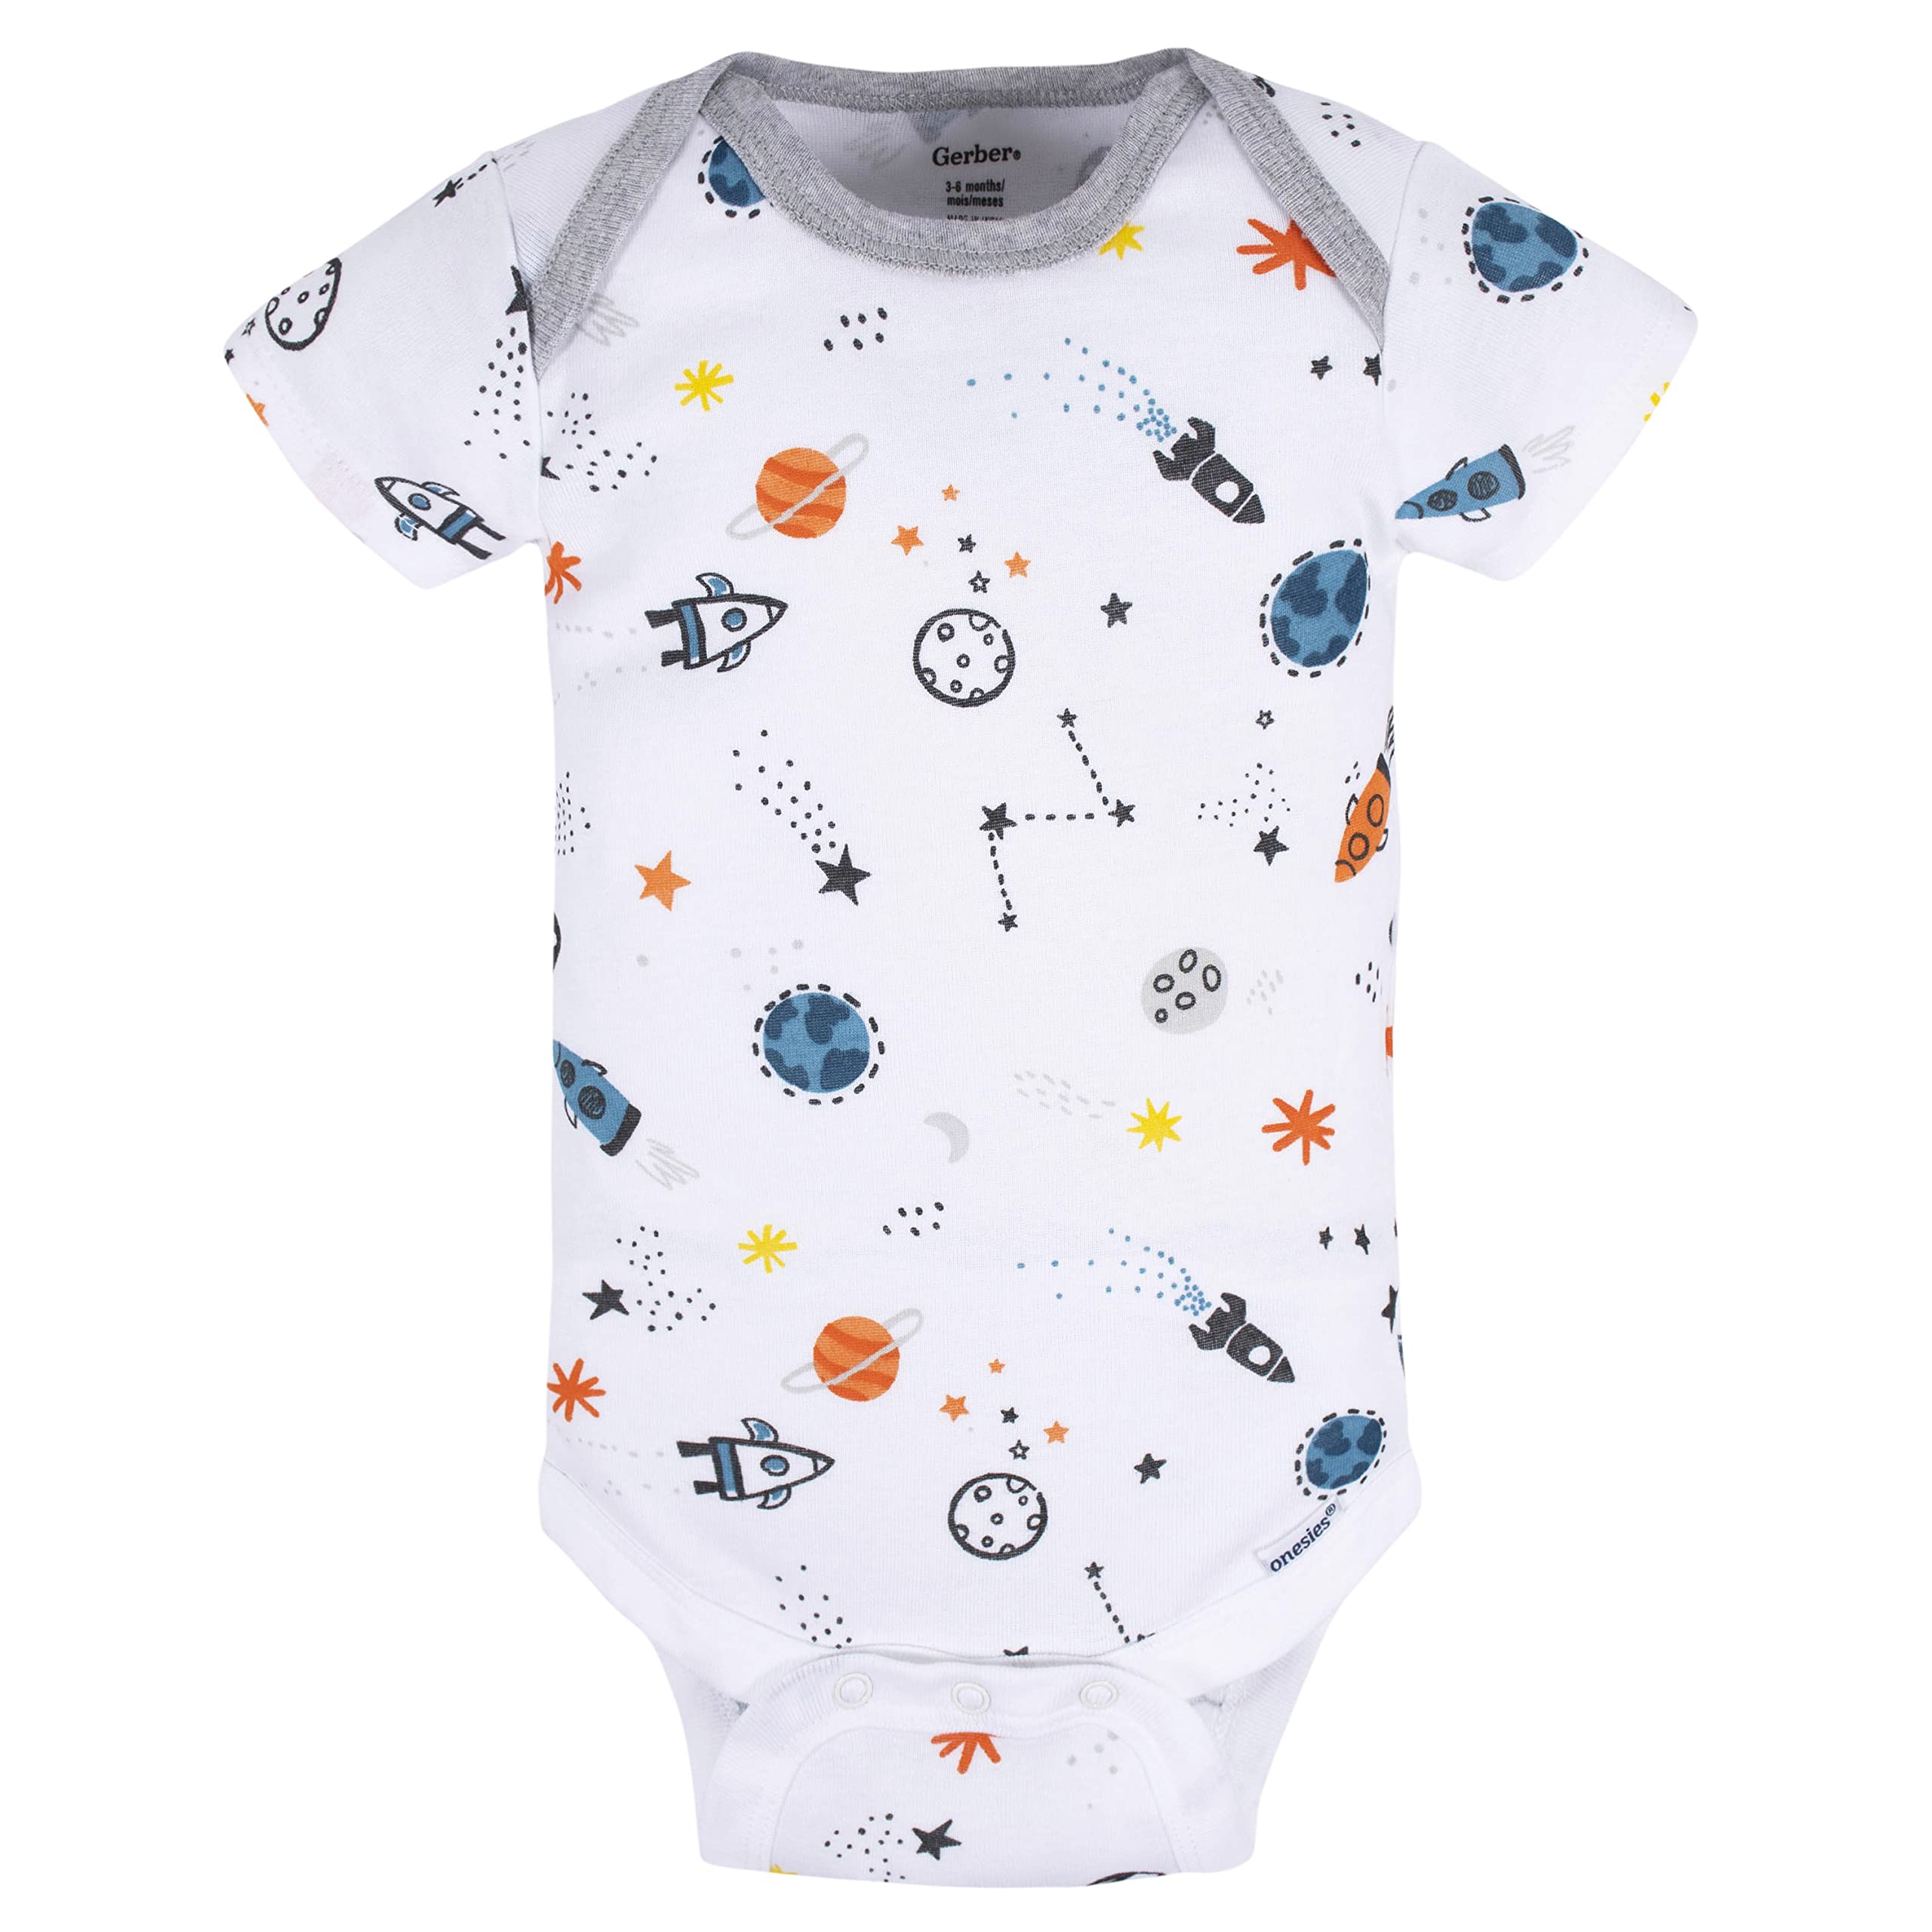 Gerber Baby Boy's 8-Pack Short Sleeve Onesies Bodysuits, Space, 3-6 Months